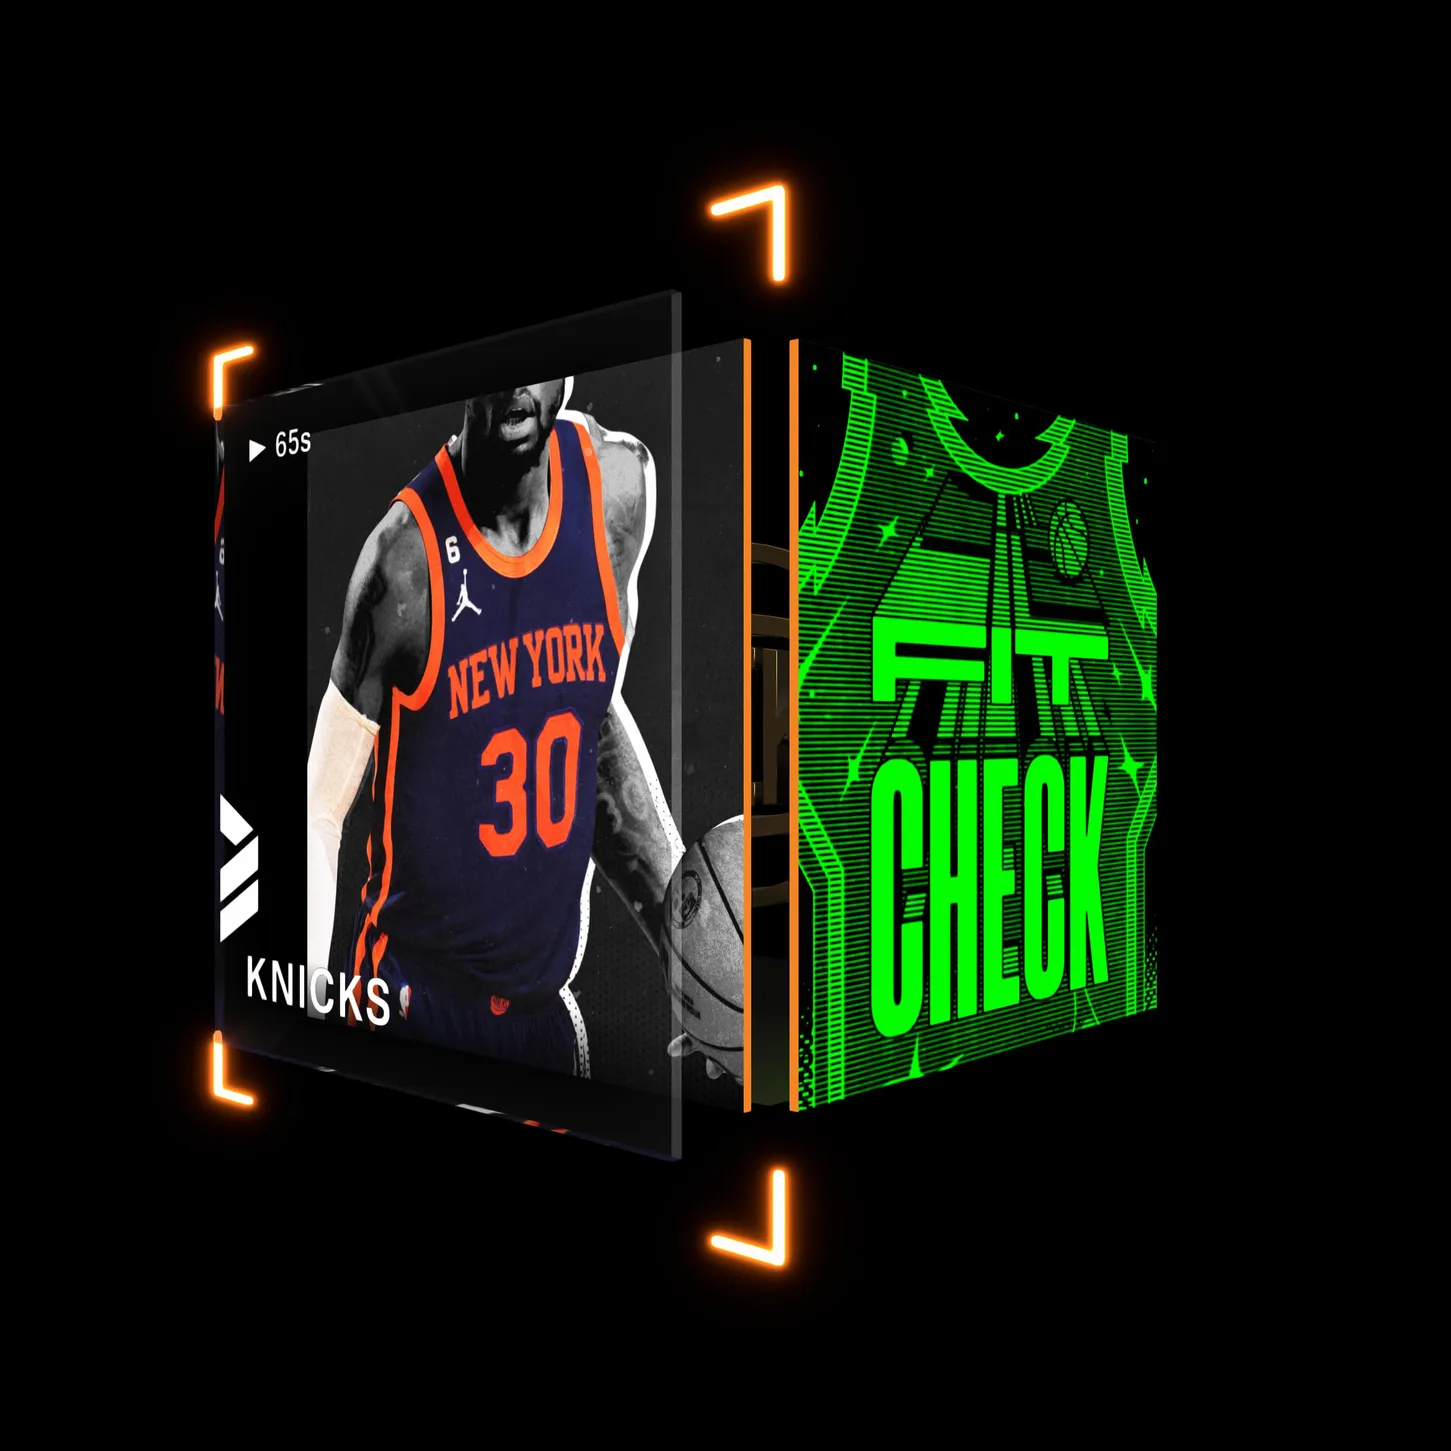 New York Knicks asset